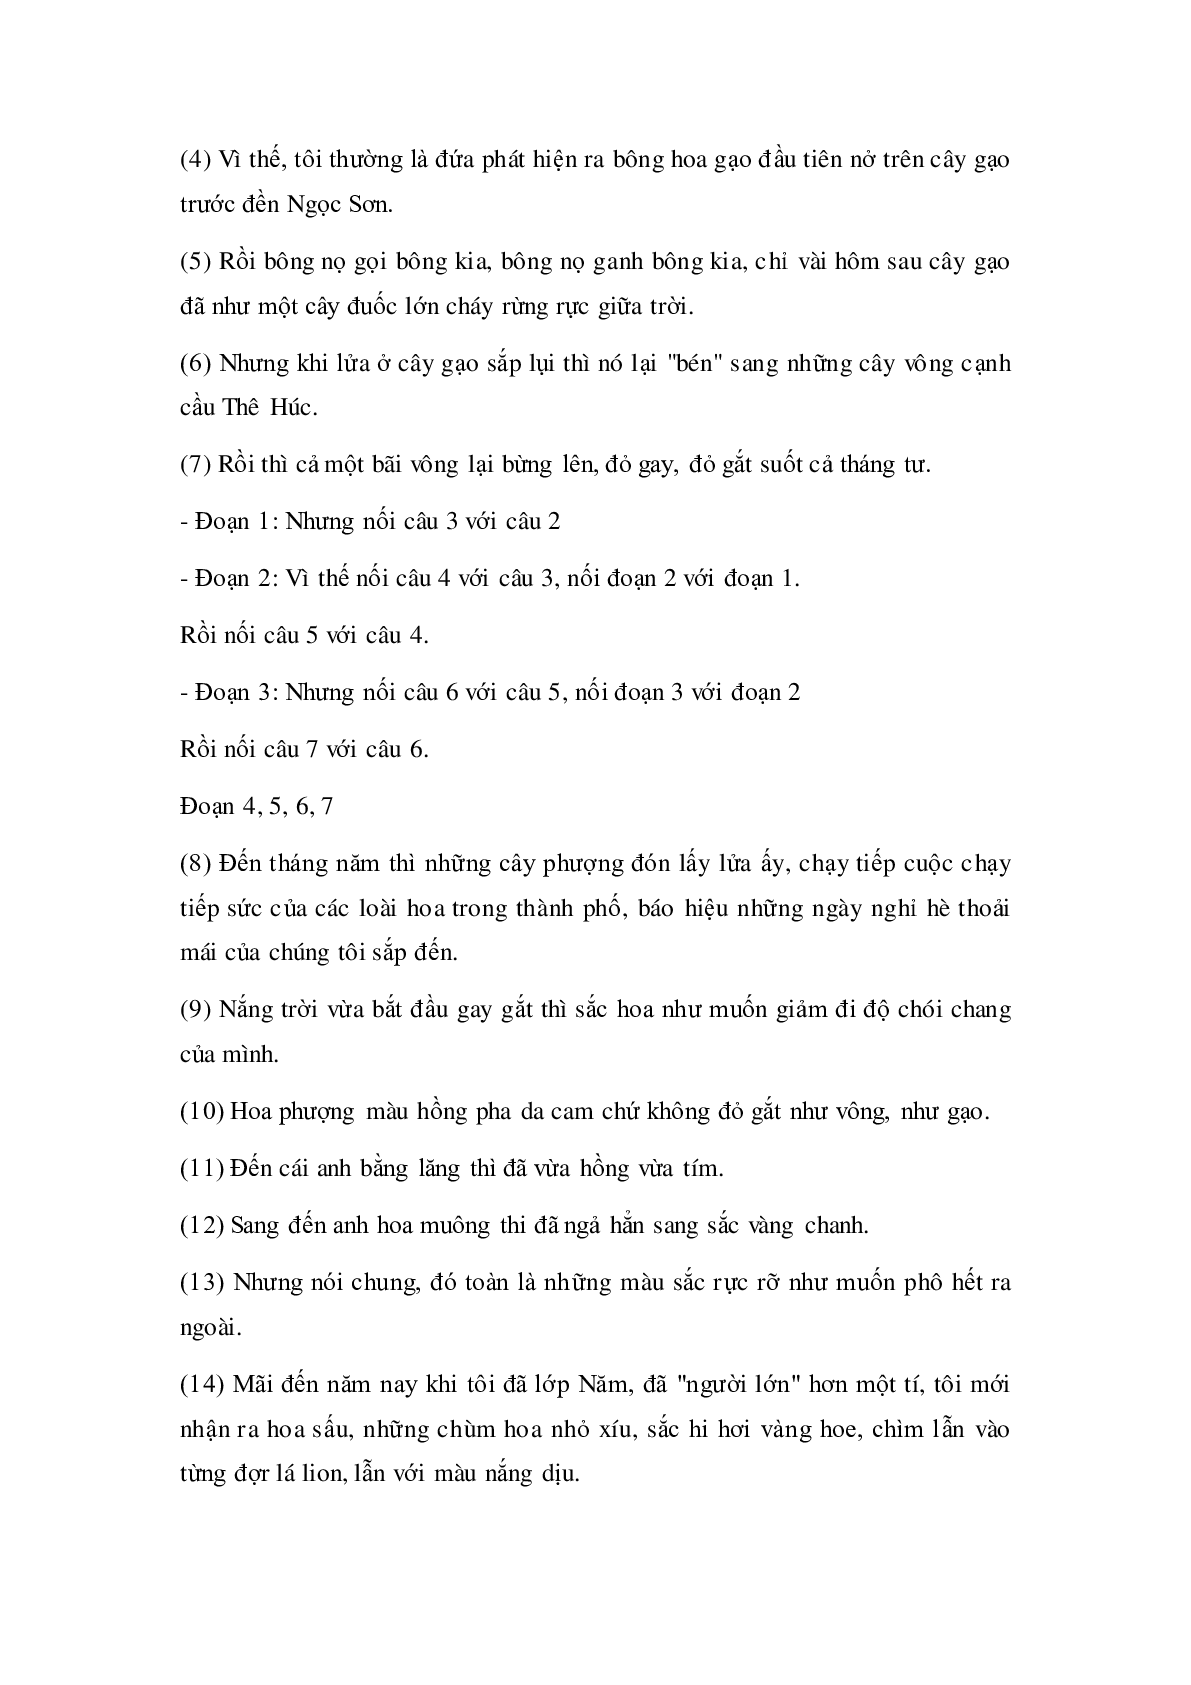 Soạn Tiếng Việt lớp 5: Luyện từ và câu: Liên kết các câu trong bài bằng từ ngữ nối mới nhất (trang 3)